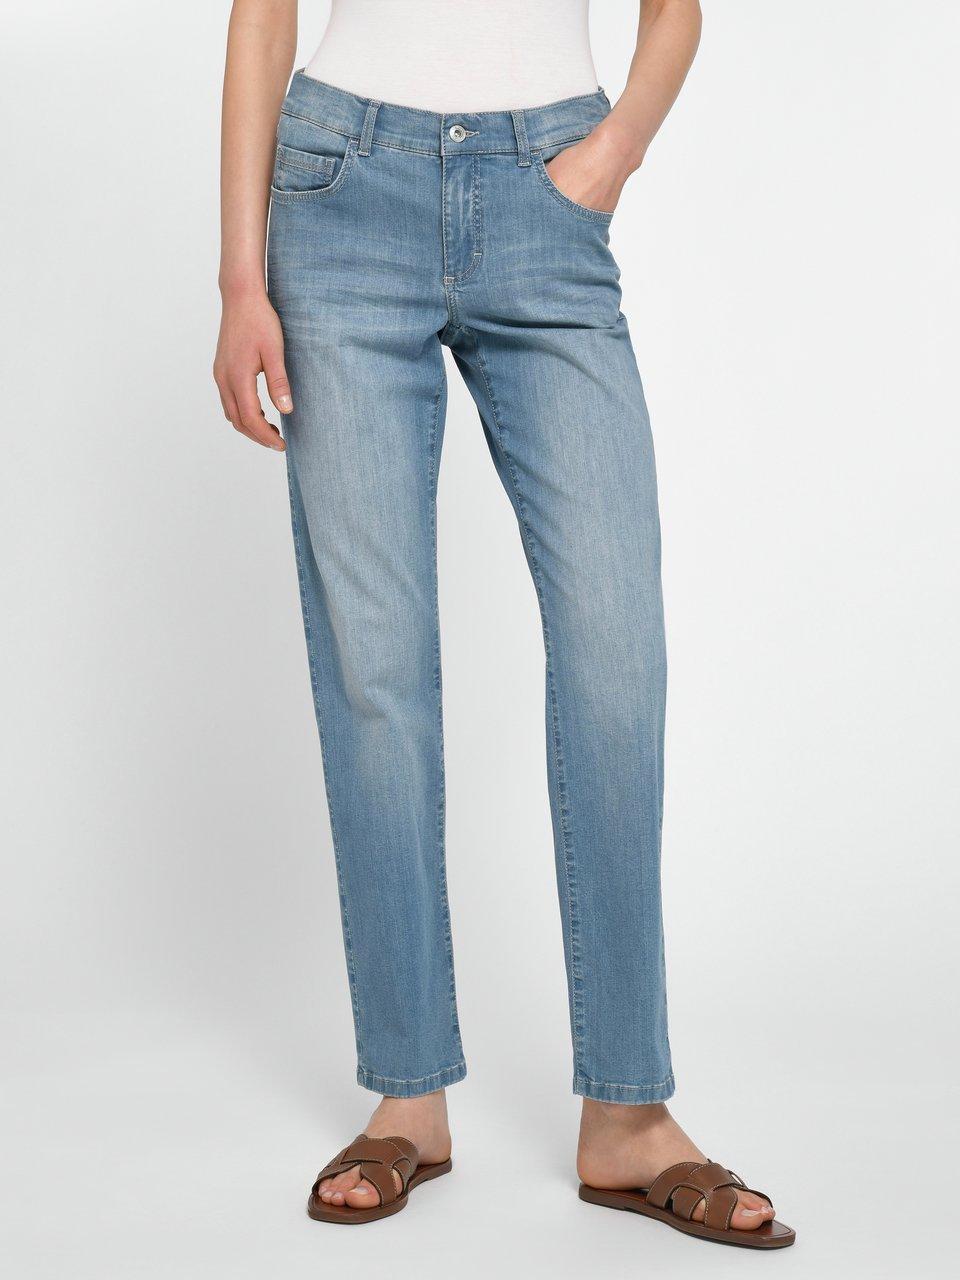 jeans blue Dolly ANGELS - design Regular fit - denim